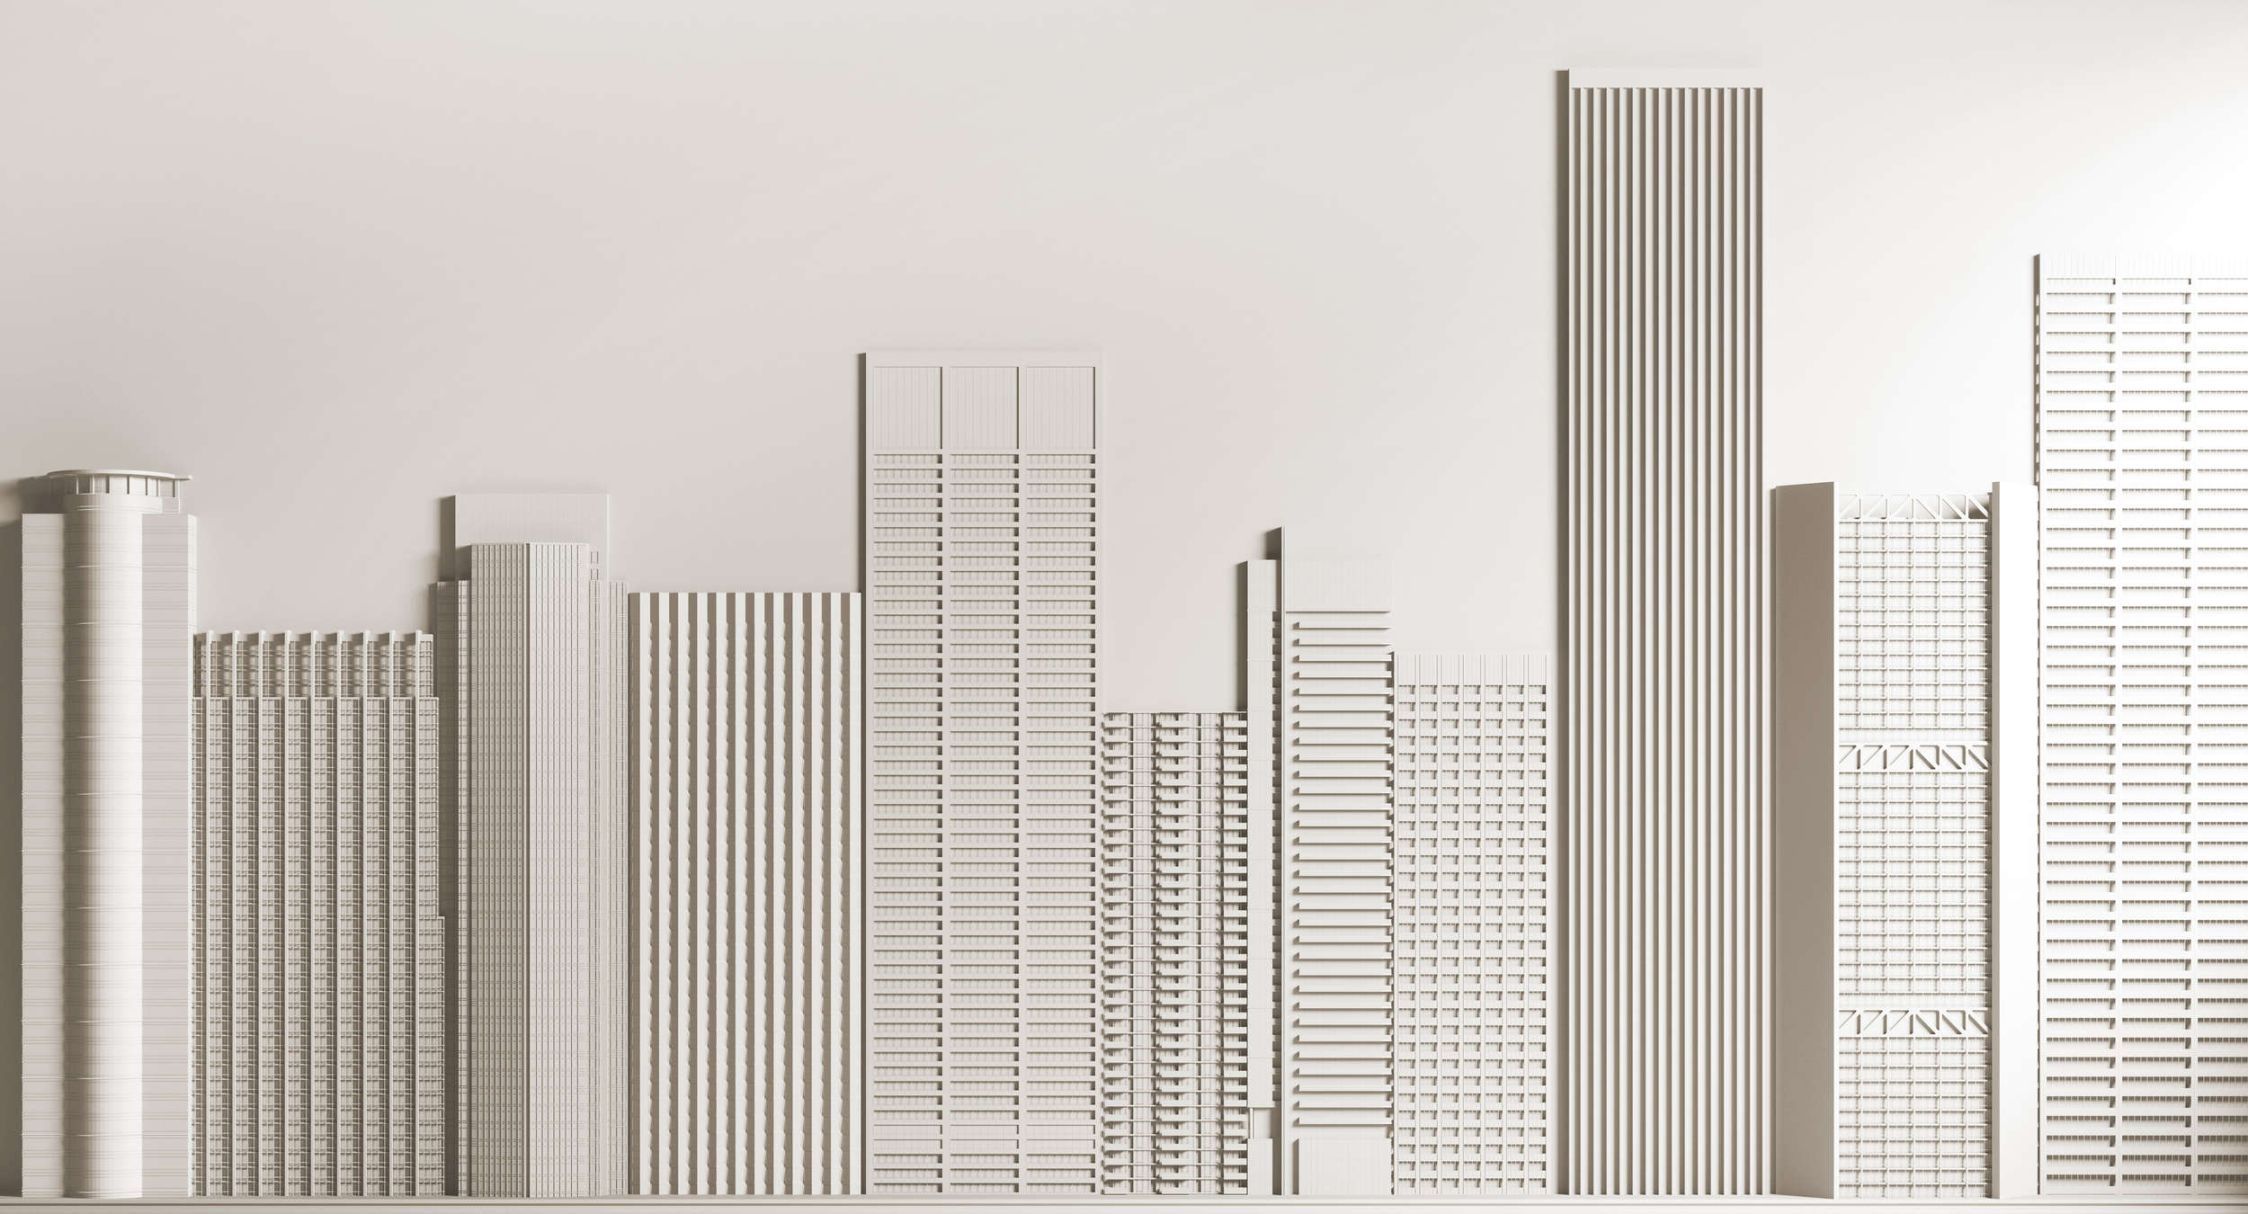             papier peint en papier panoramique »new skyline« - architecture avec gratte-ciel - intissé lisse, légèrement nacré
        